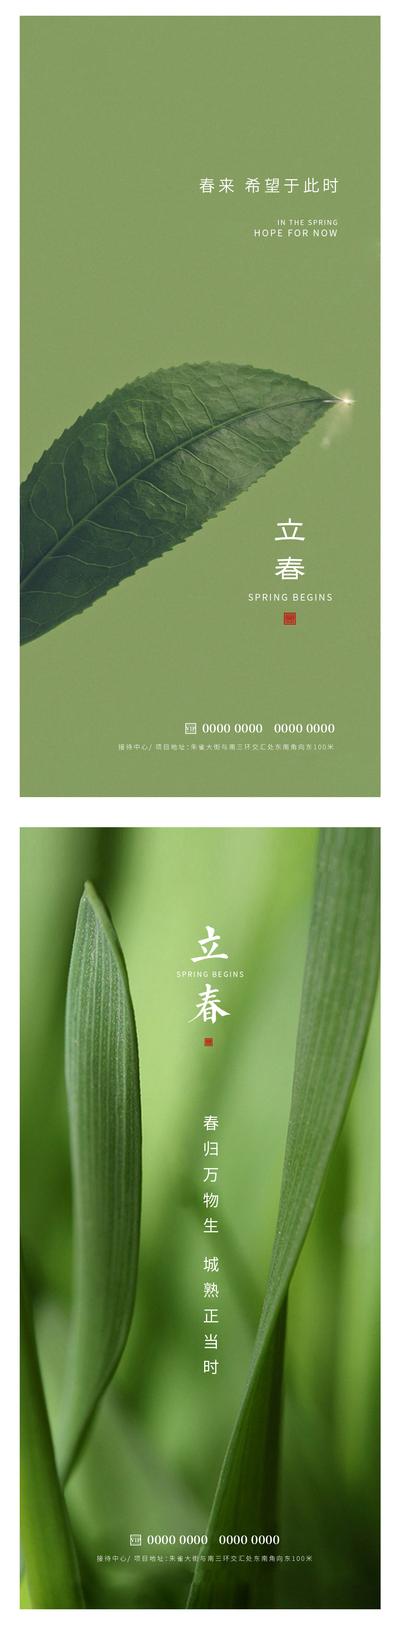 南门网 广告 节日 春天 立春 叶子 绿叶 嫩绿